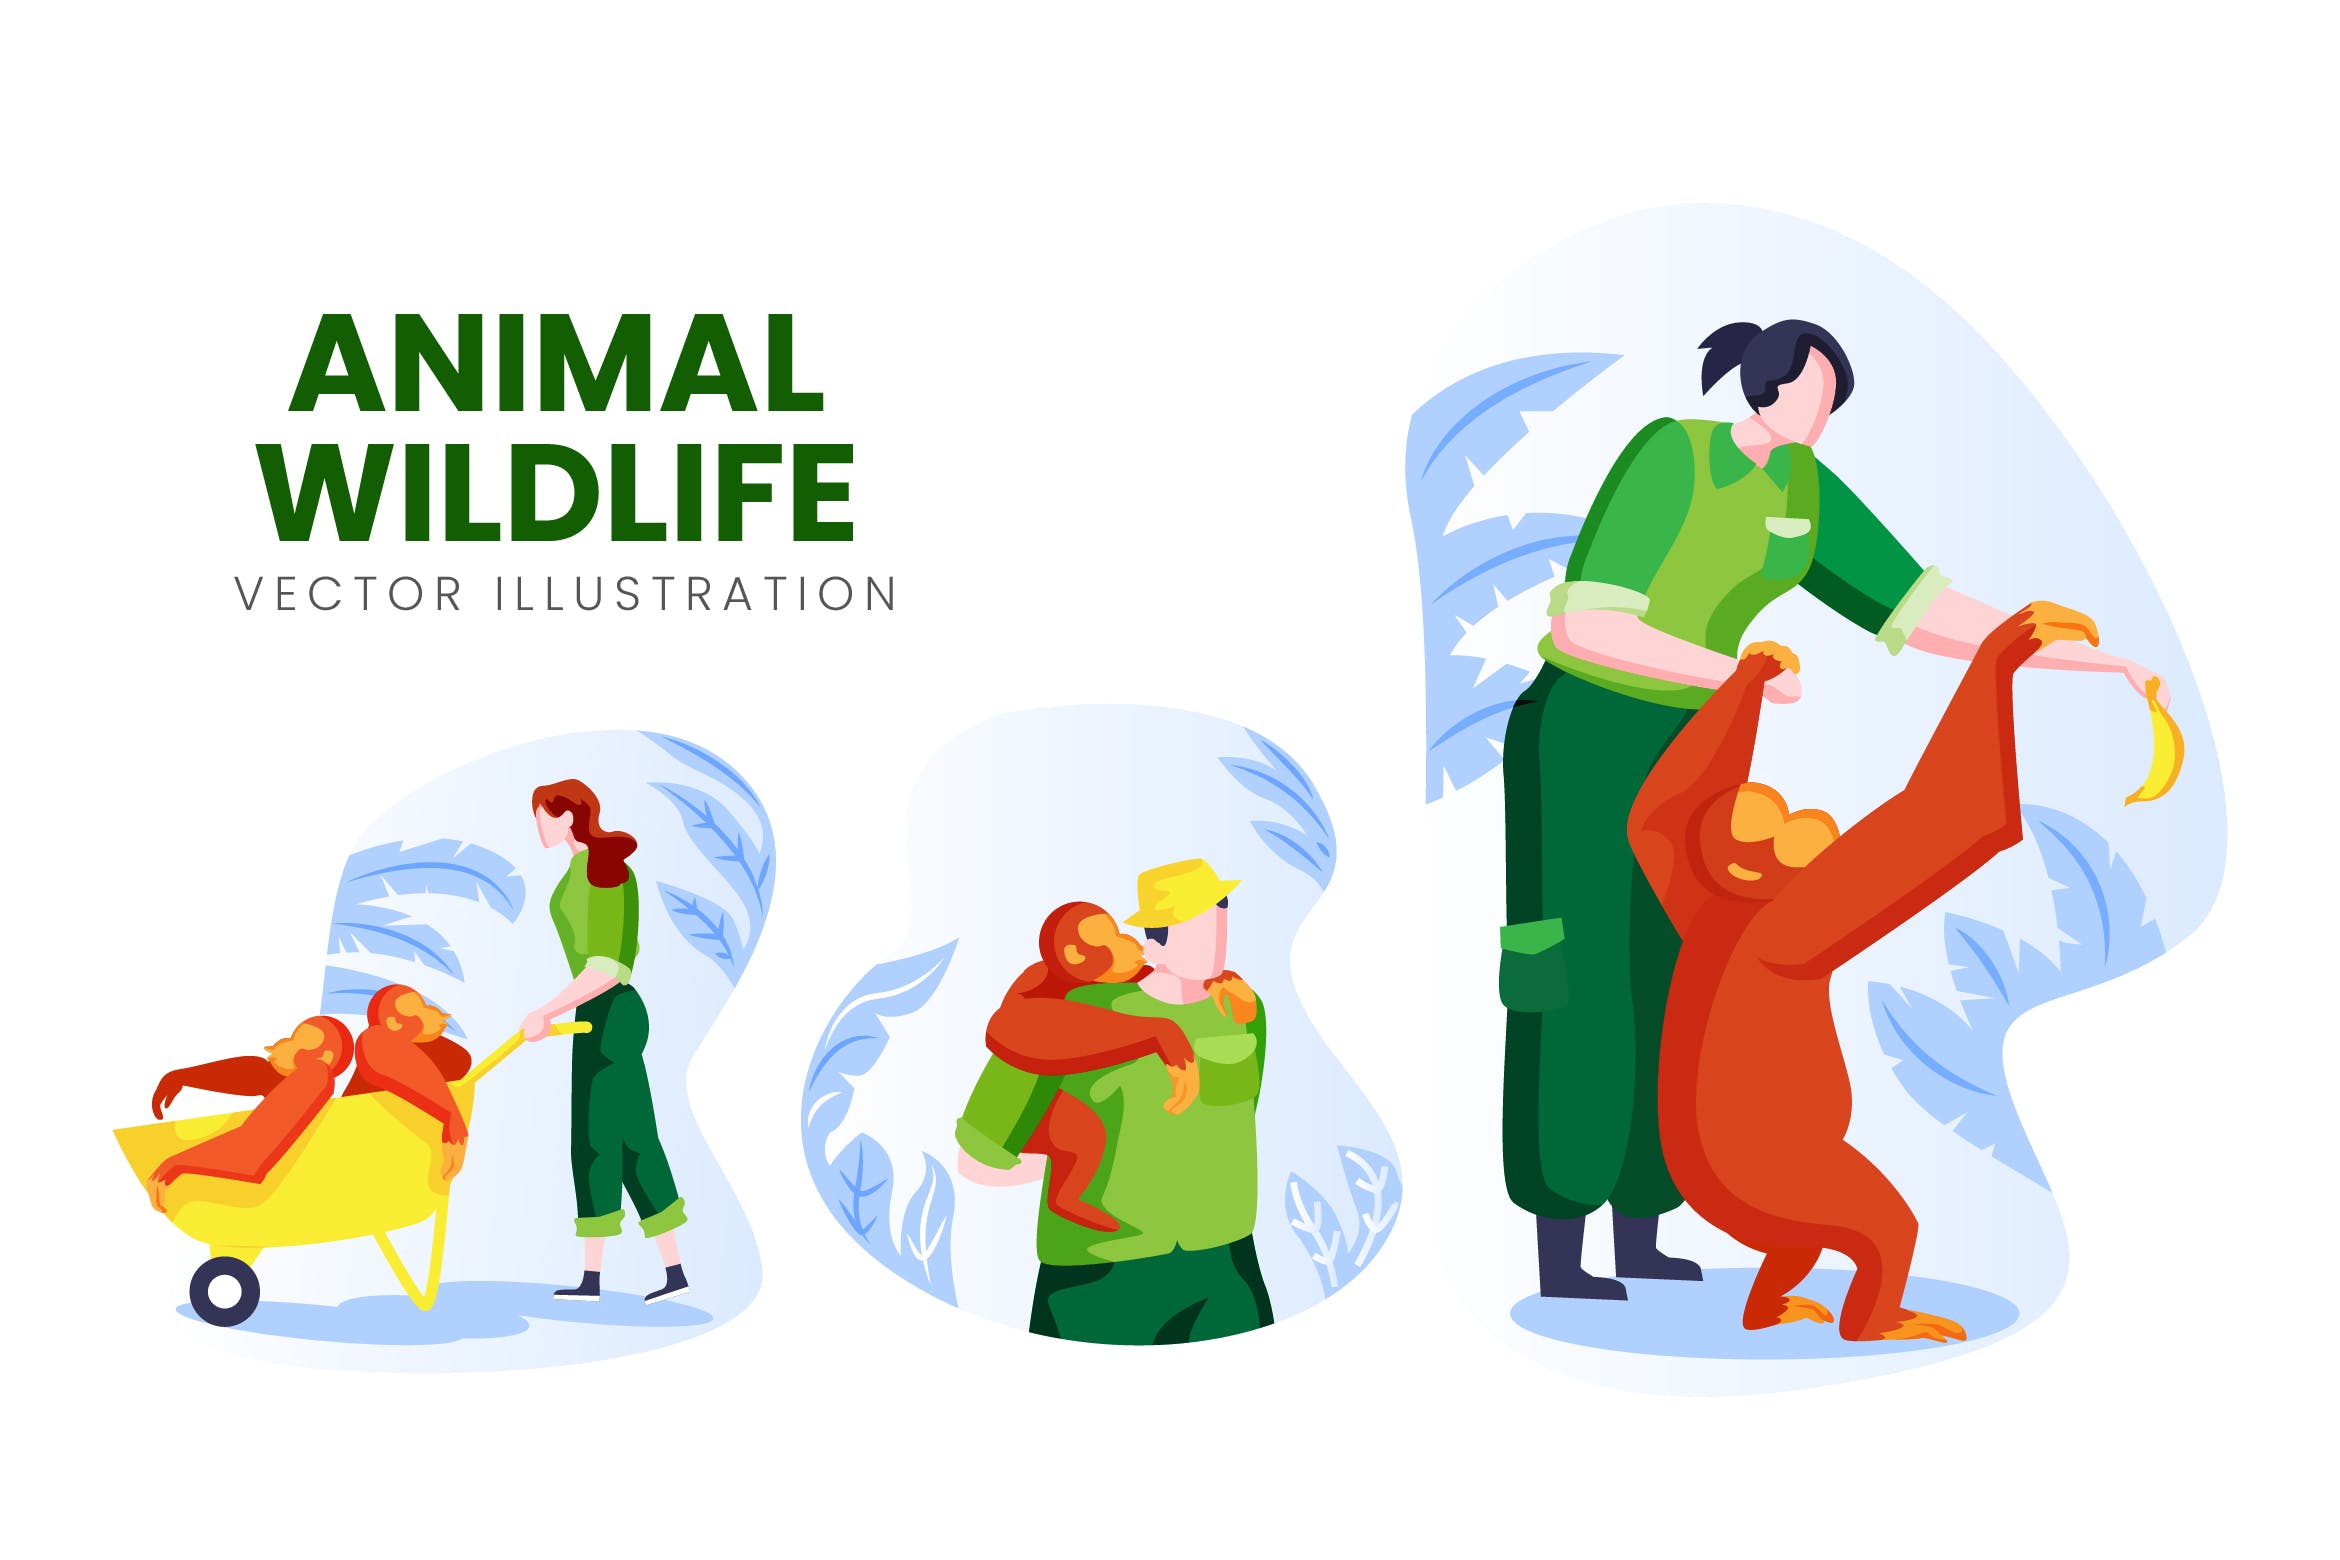 野生动物保育员人物形象16设计网精选手绘插画矢量素材 Animal Wildlife Vector Character Set插图